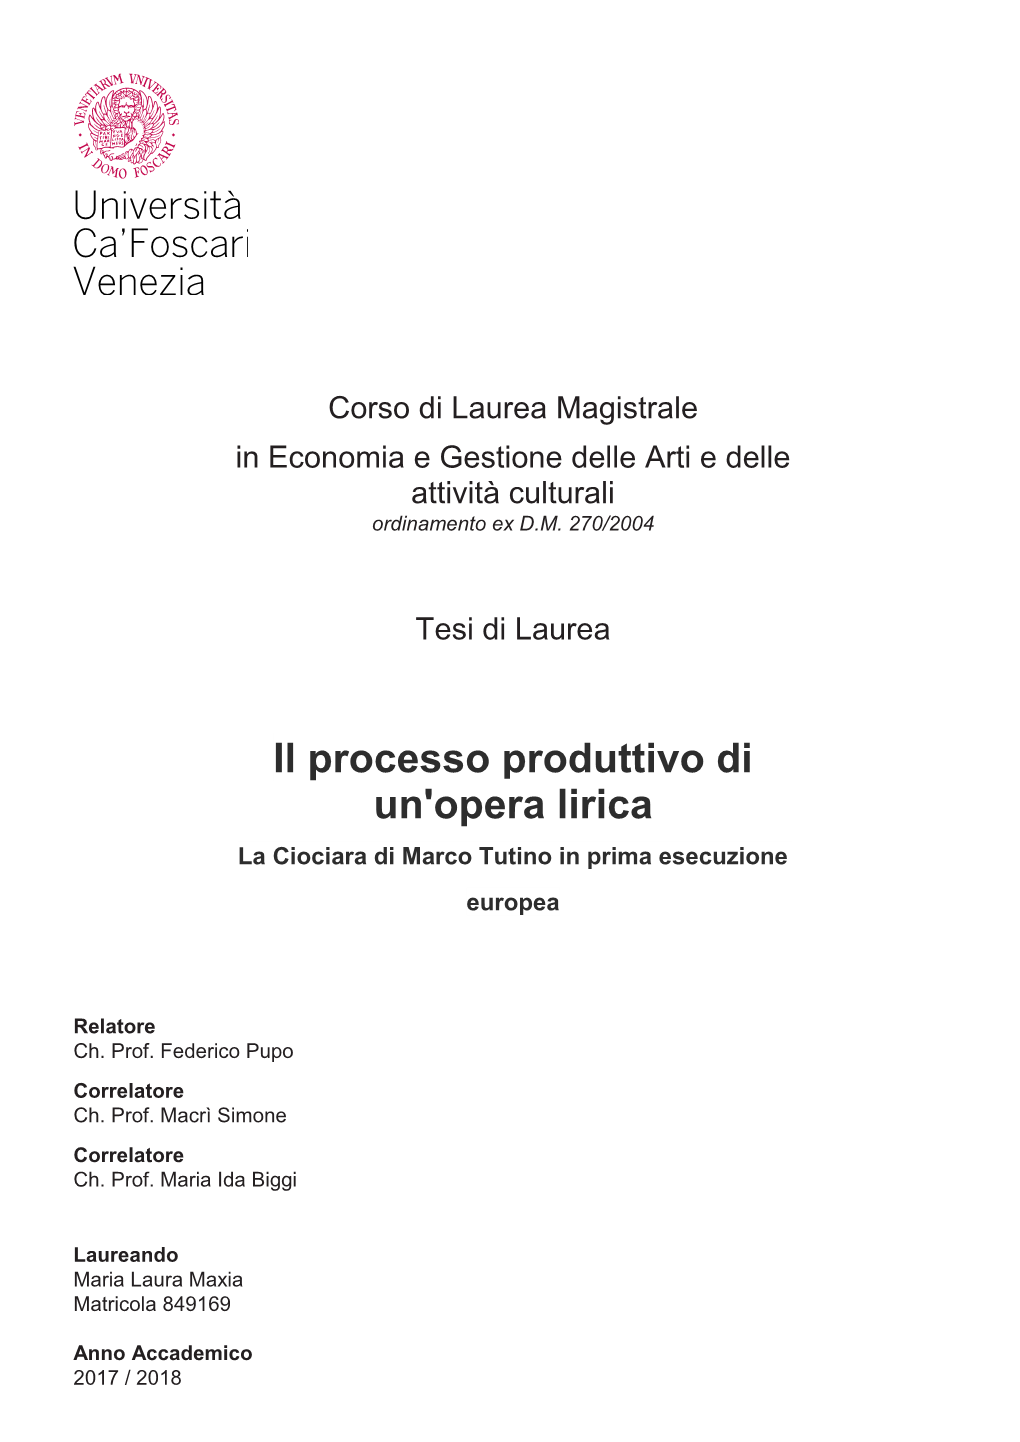 Il Processo Produttivo Di Un'opera Lirica La Ciociara Di Marco Tutino in Prima Esecuzione Europea